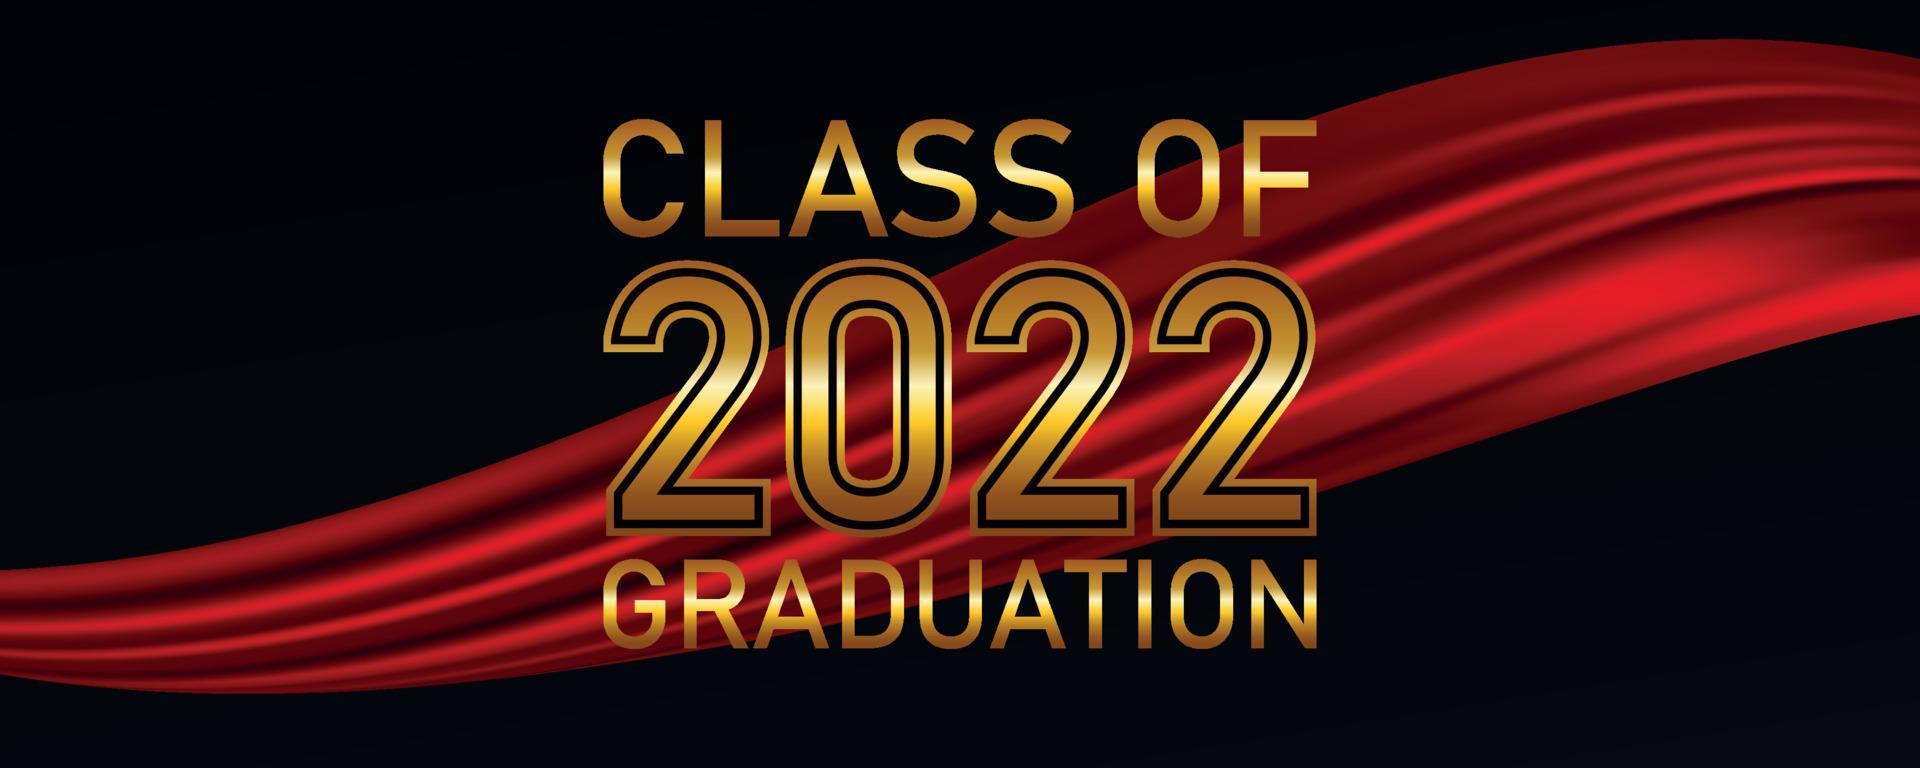 classe del 2022 disegno di testo di laurea per biglietti, inviti o banner vettore